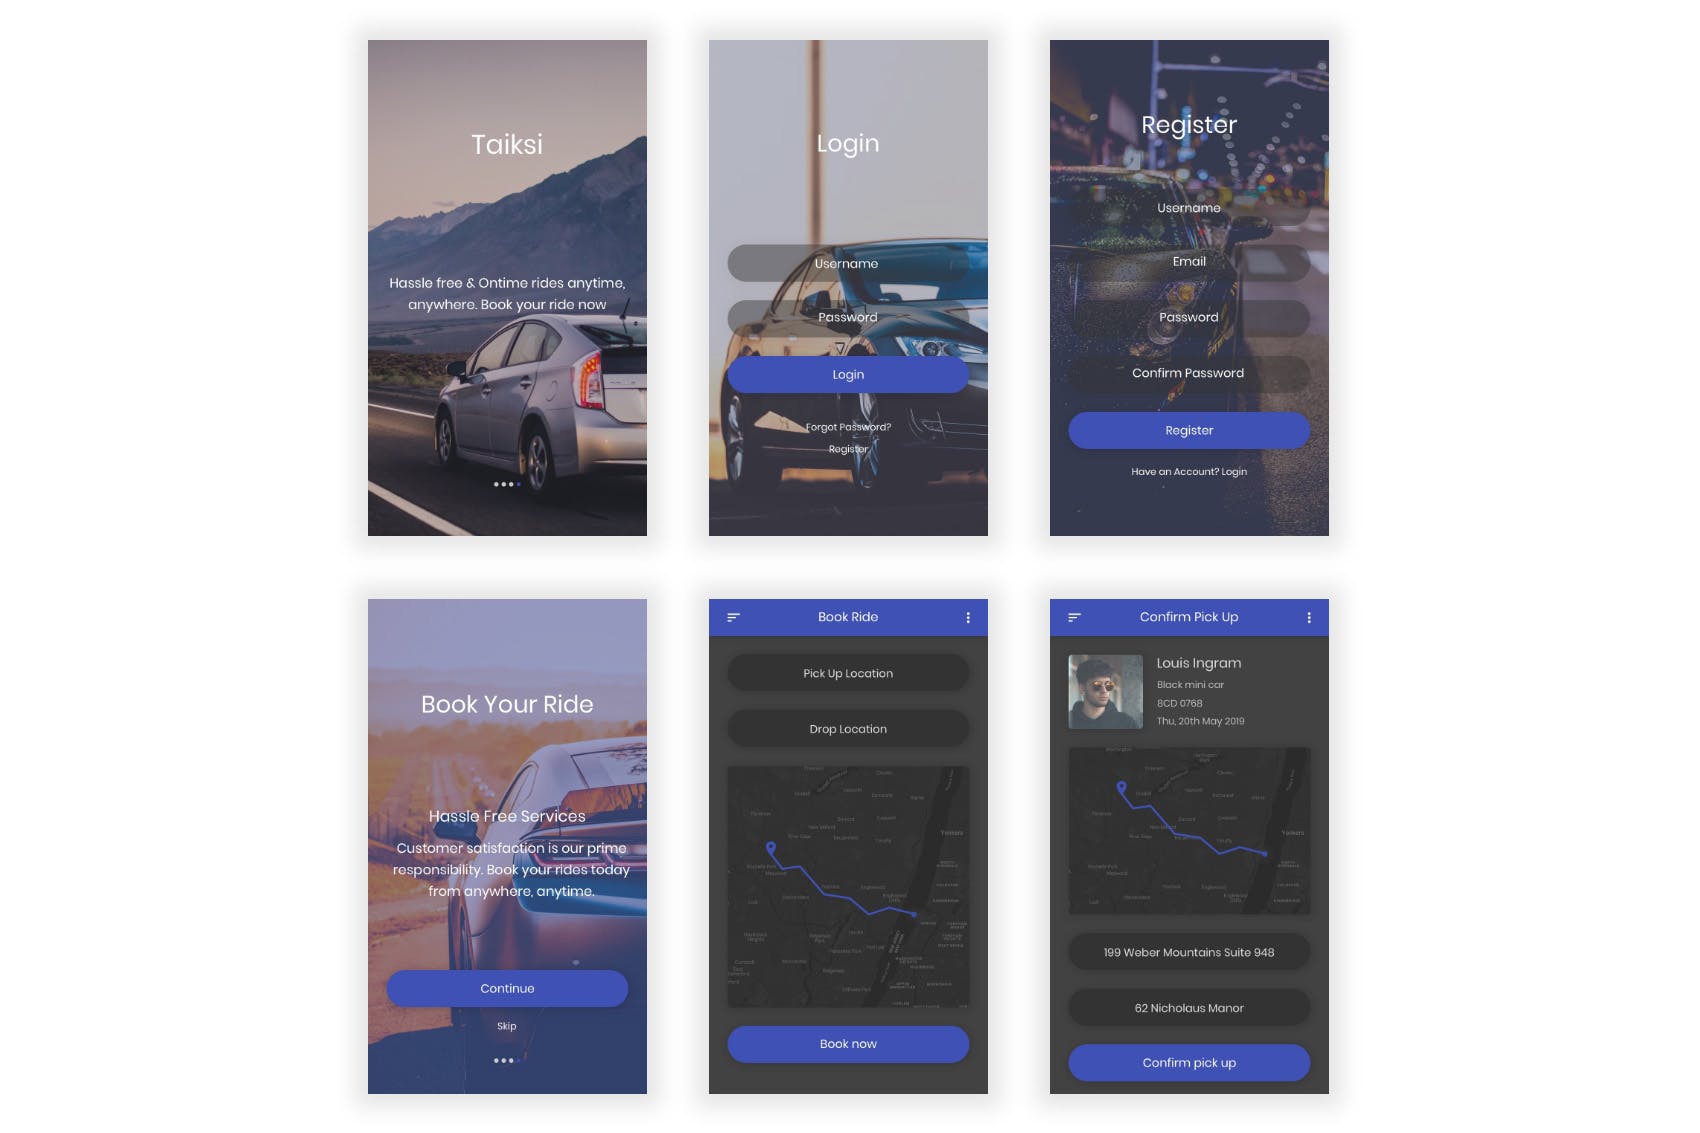 出租车网约车APP应用UI界面设计PSD模板 Taiksi – Taxi & Cab Booking Photoshop UI Kit插图(10)